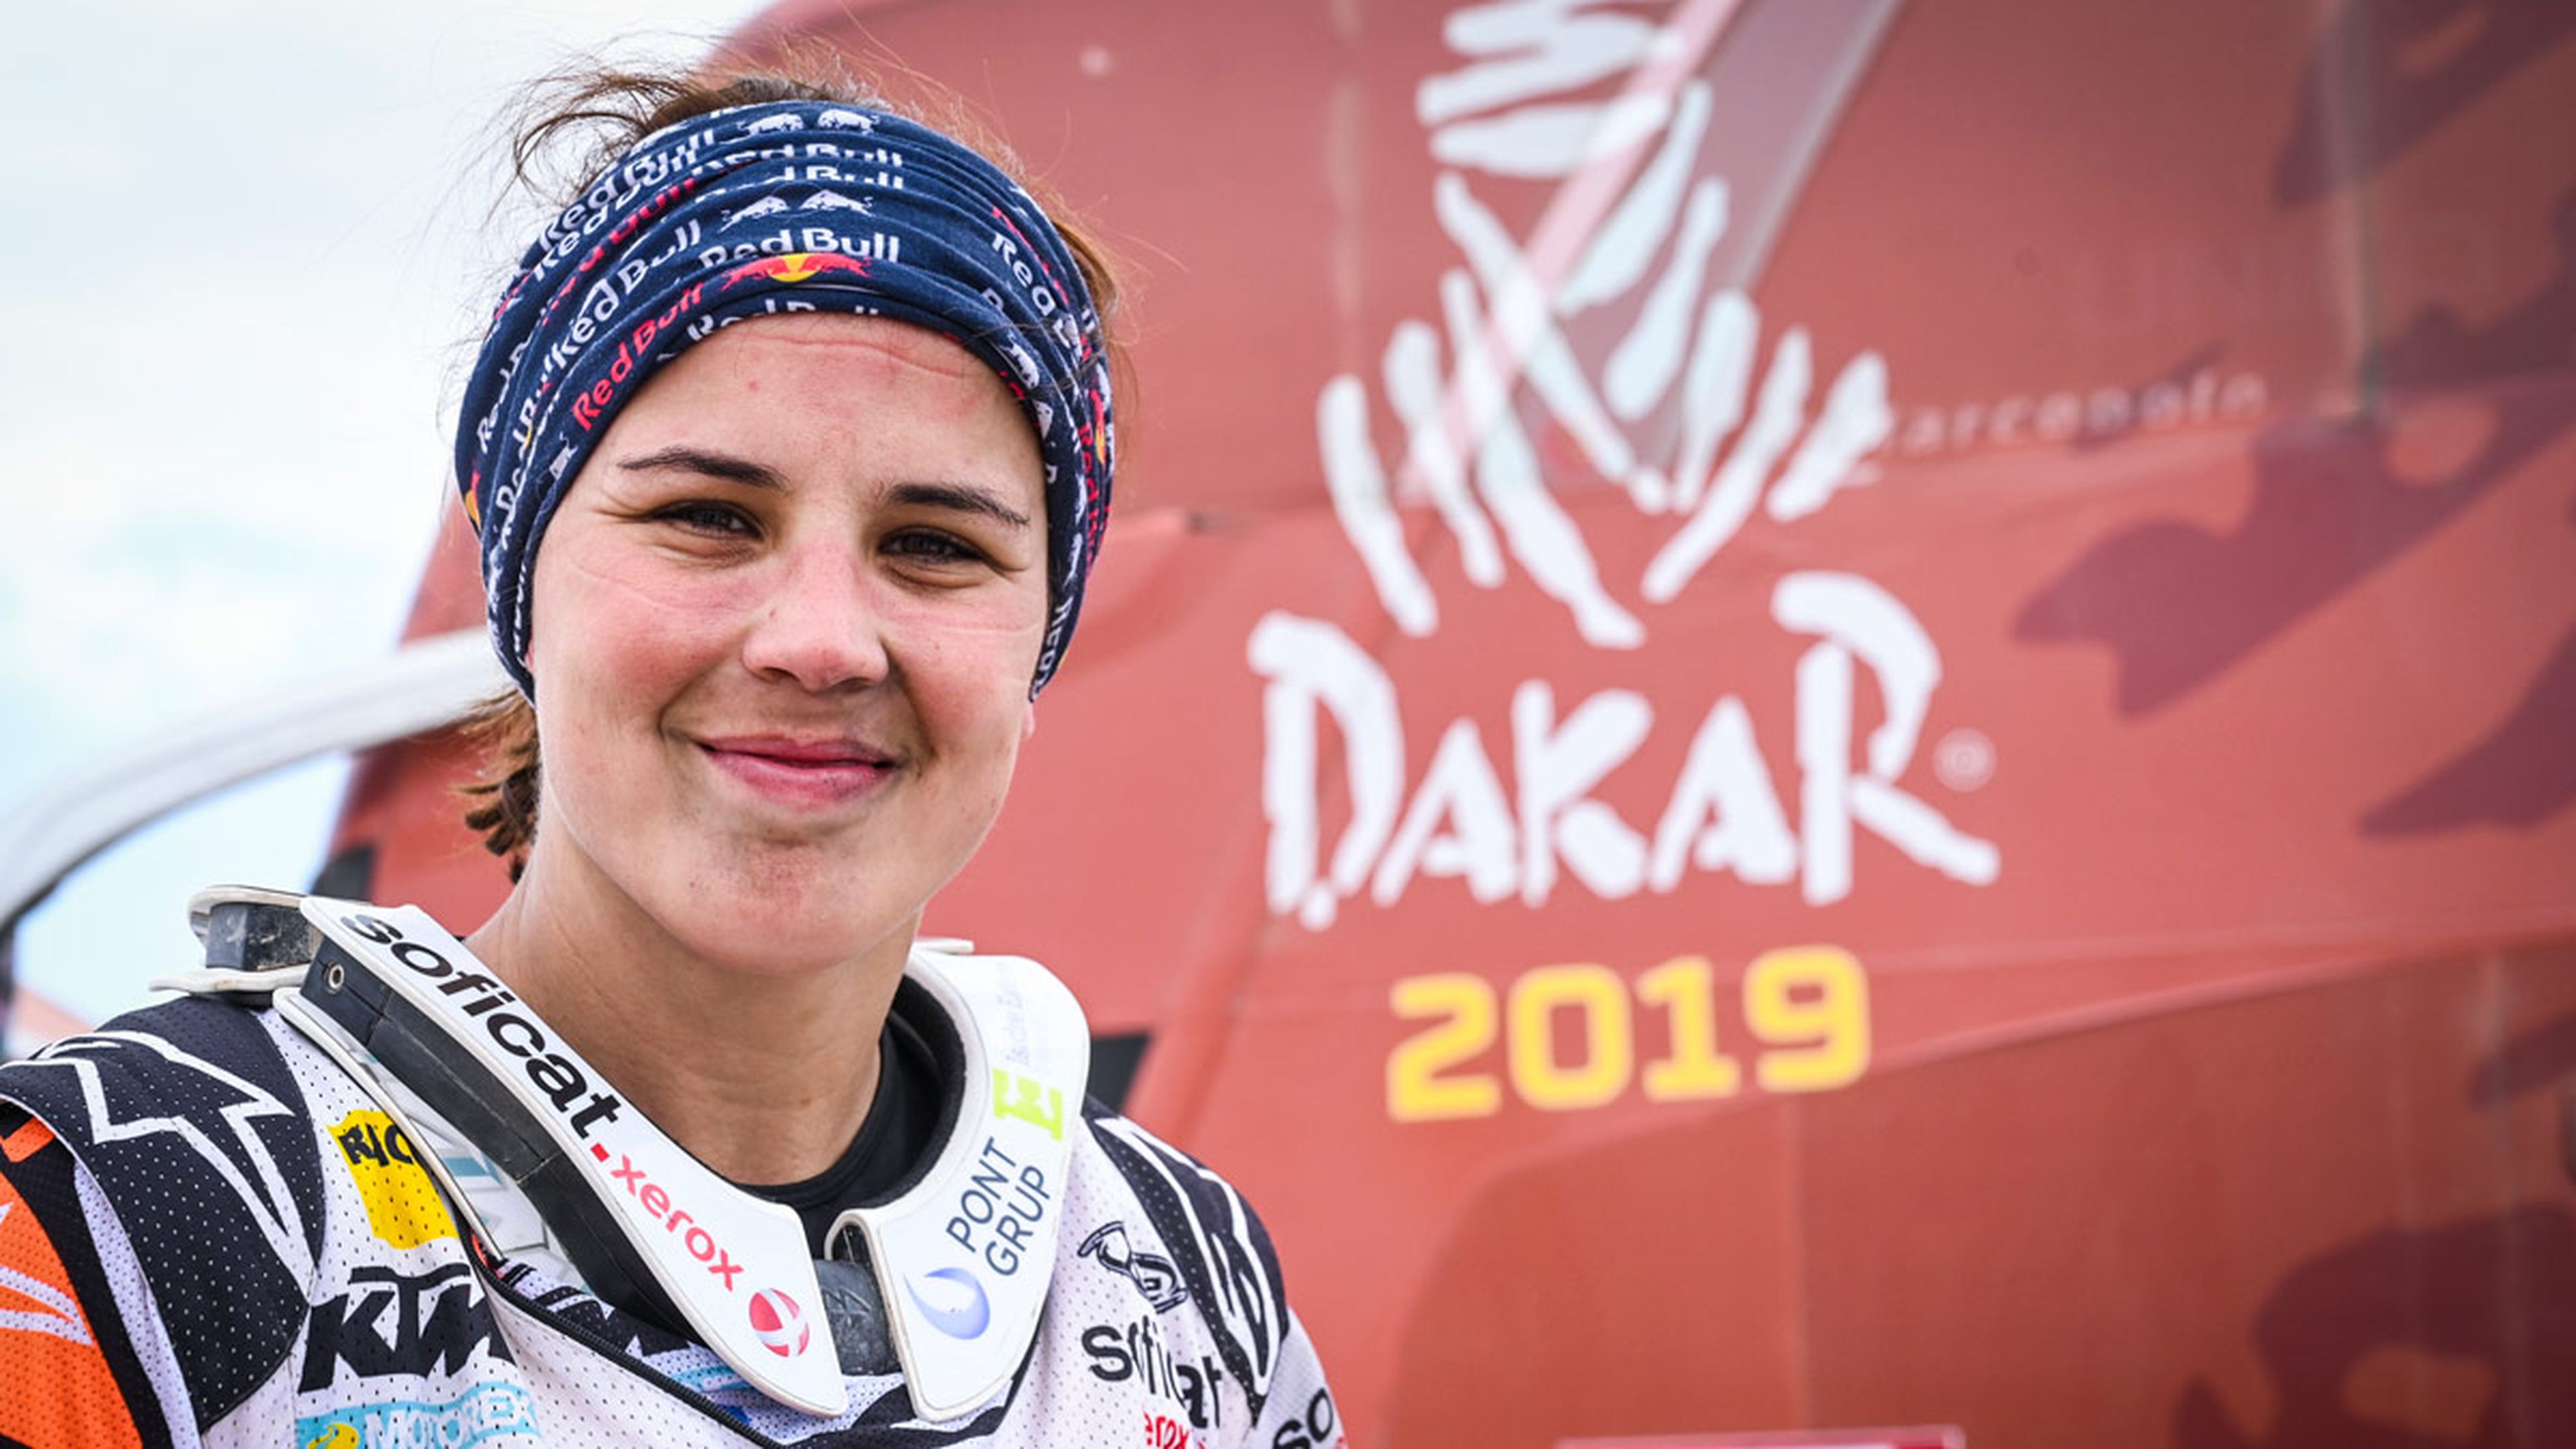 Laia Sanz Dakar 2019